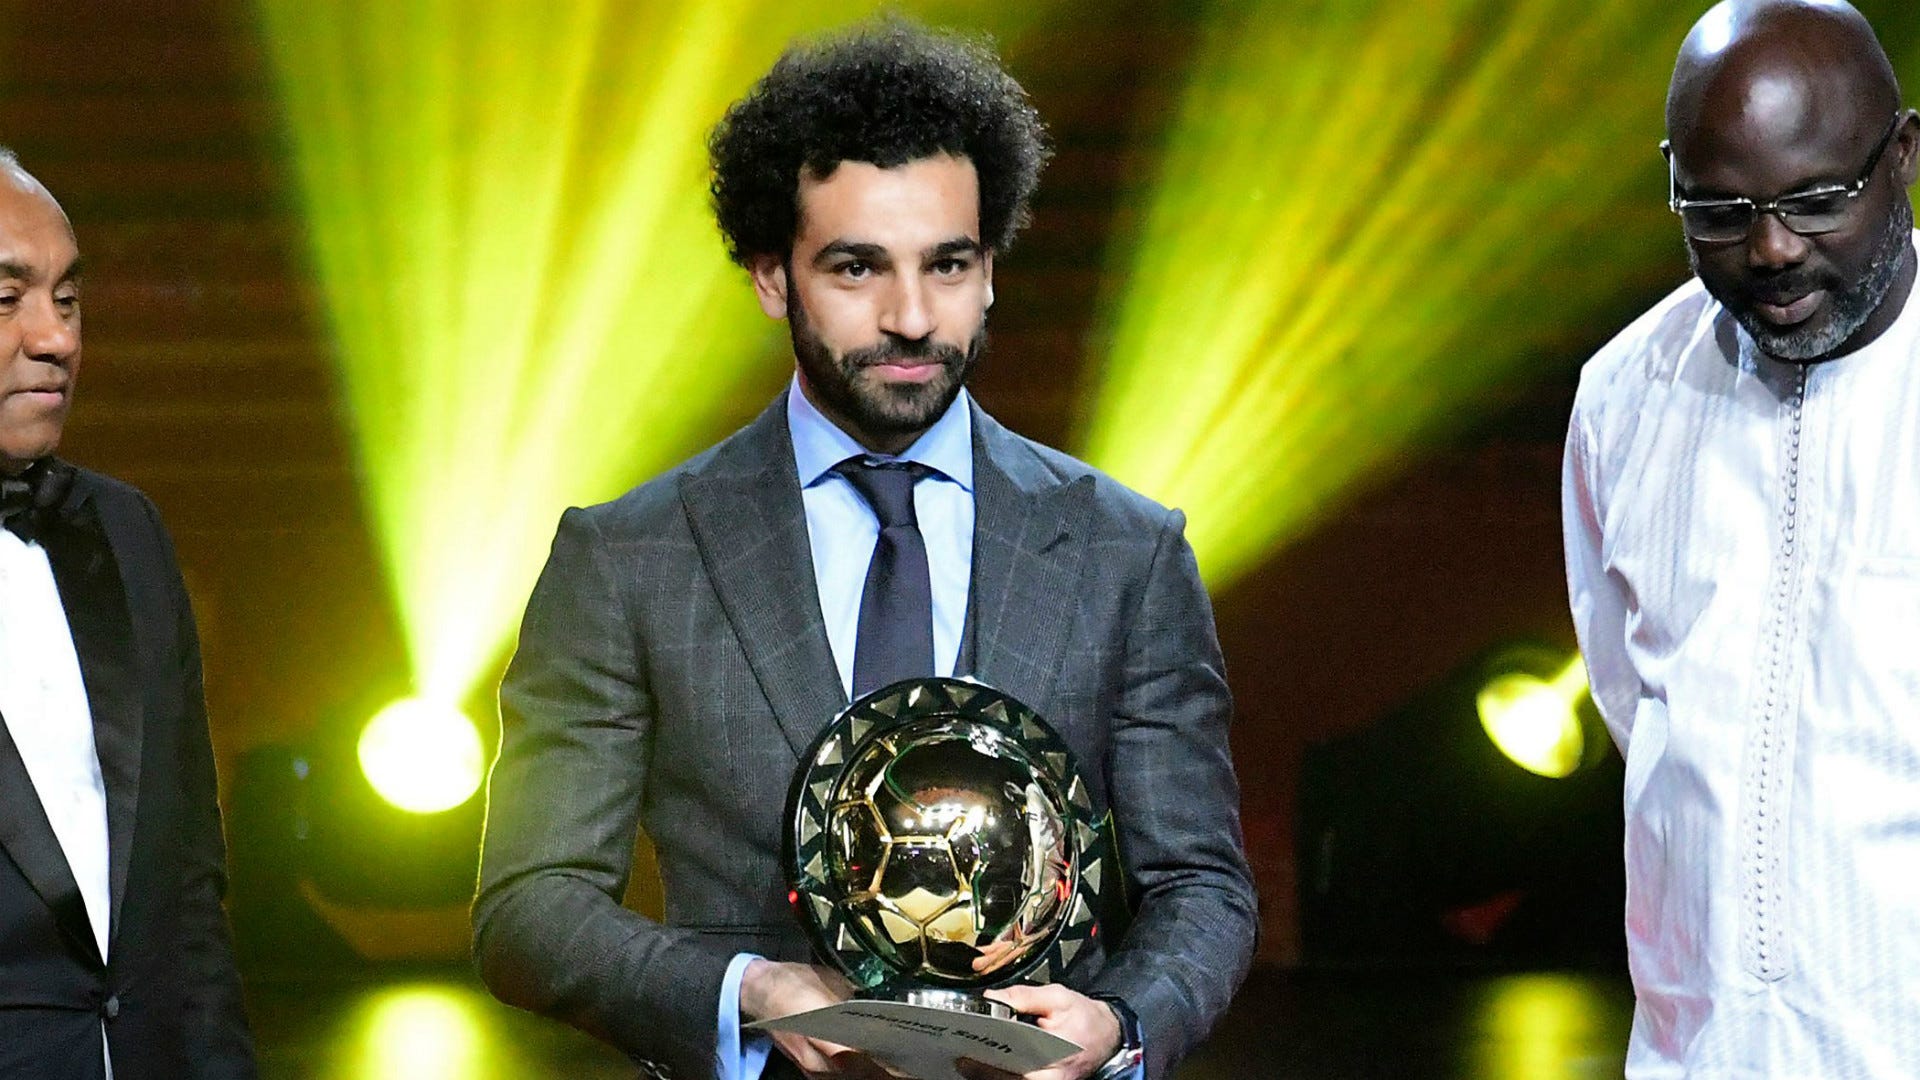 Mohamed Salah melhor jogador africano